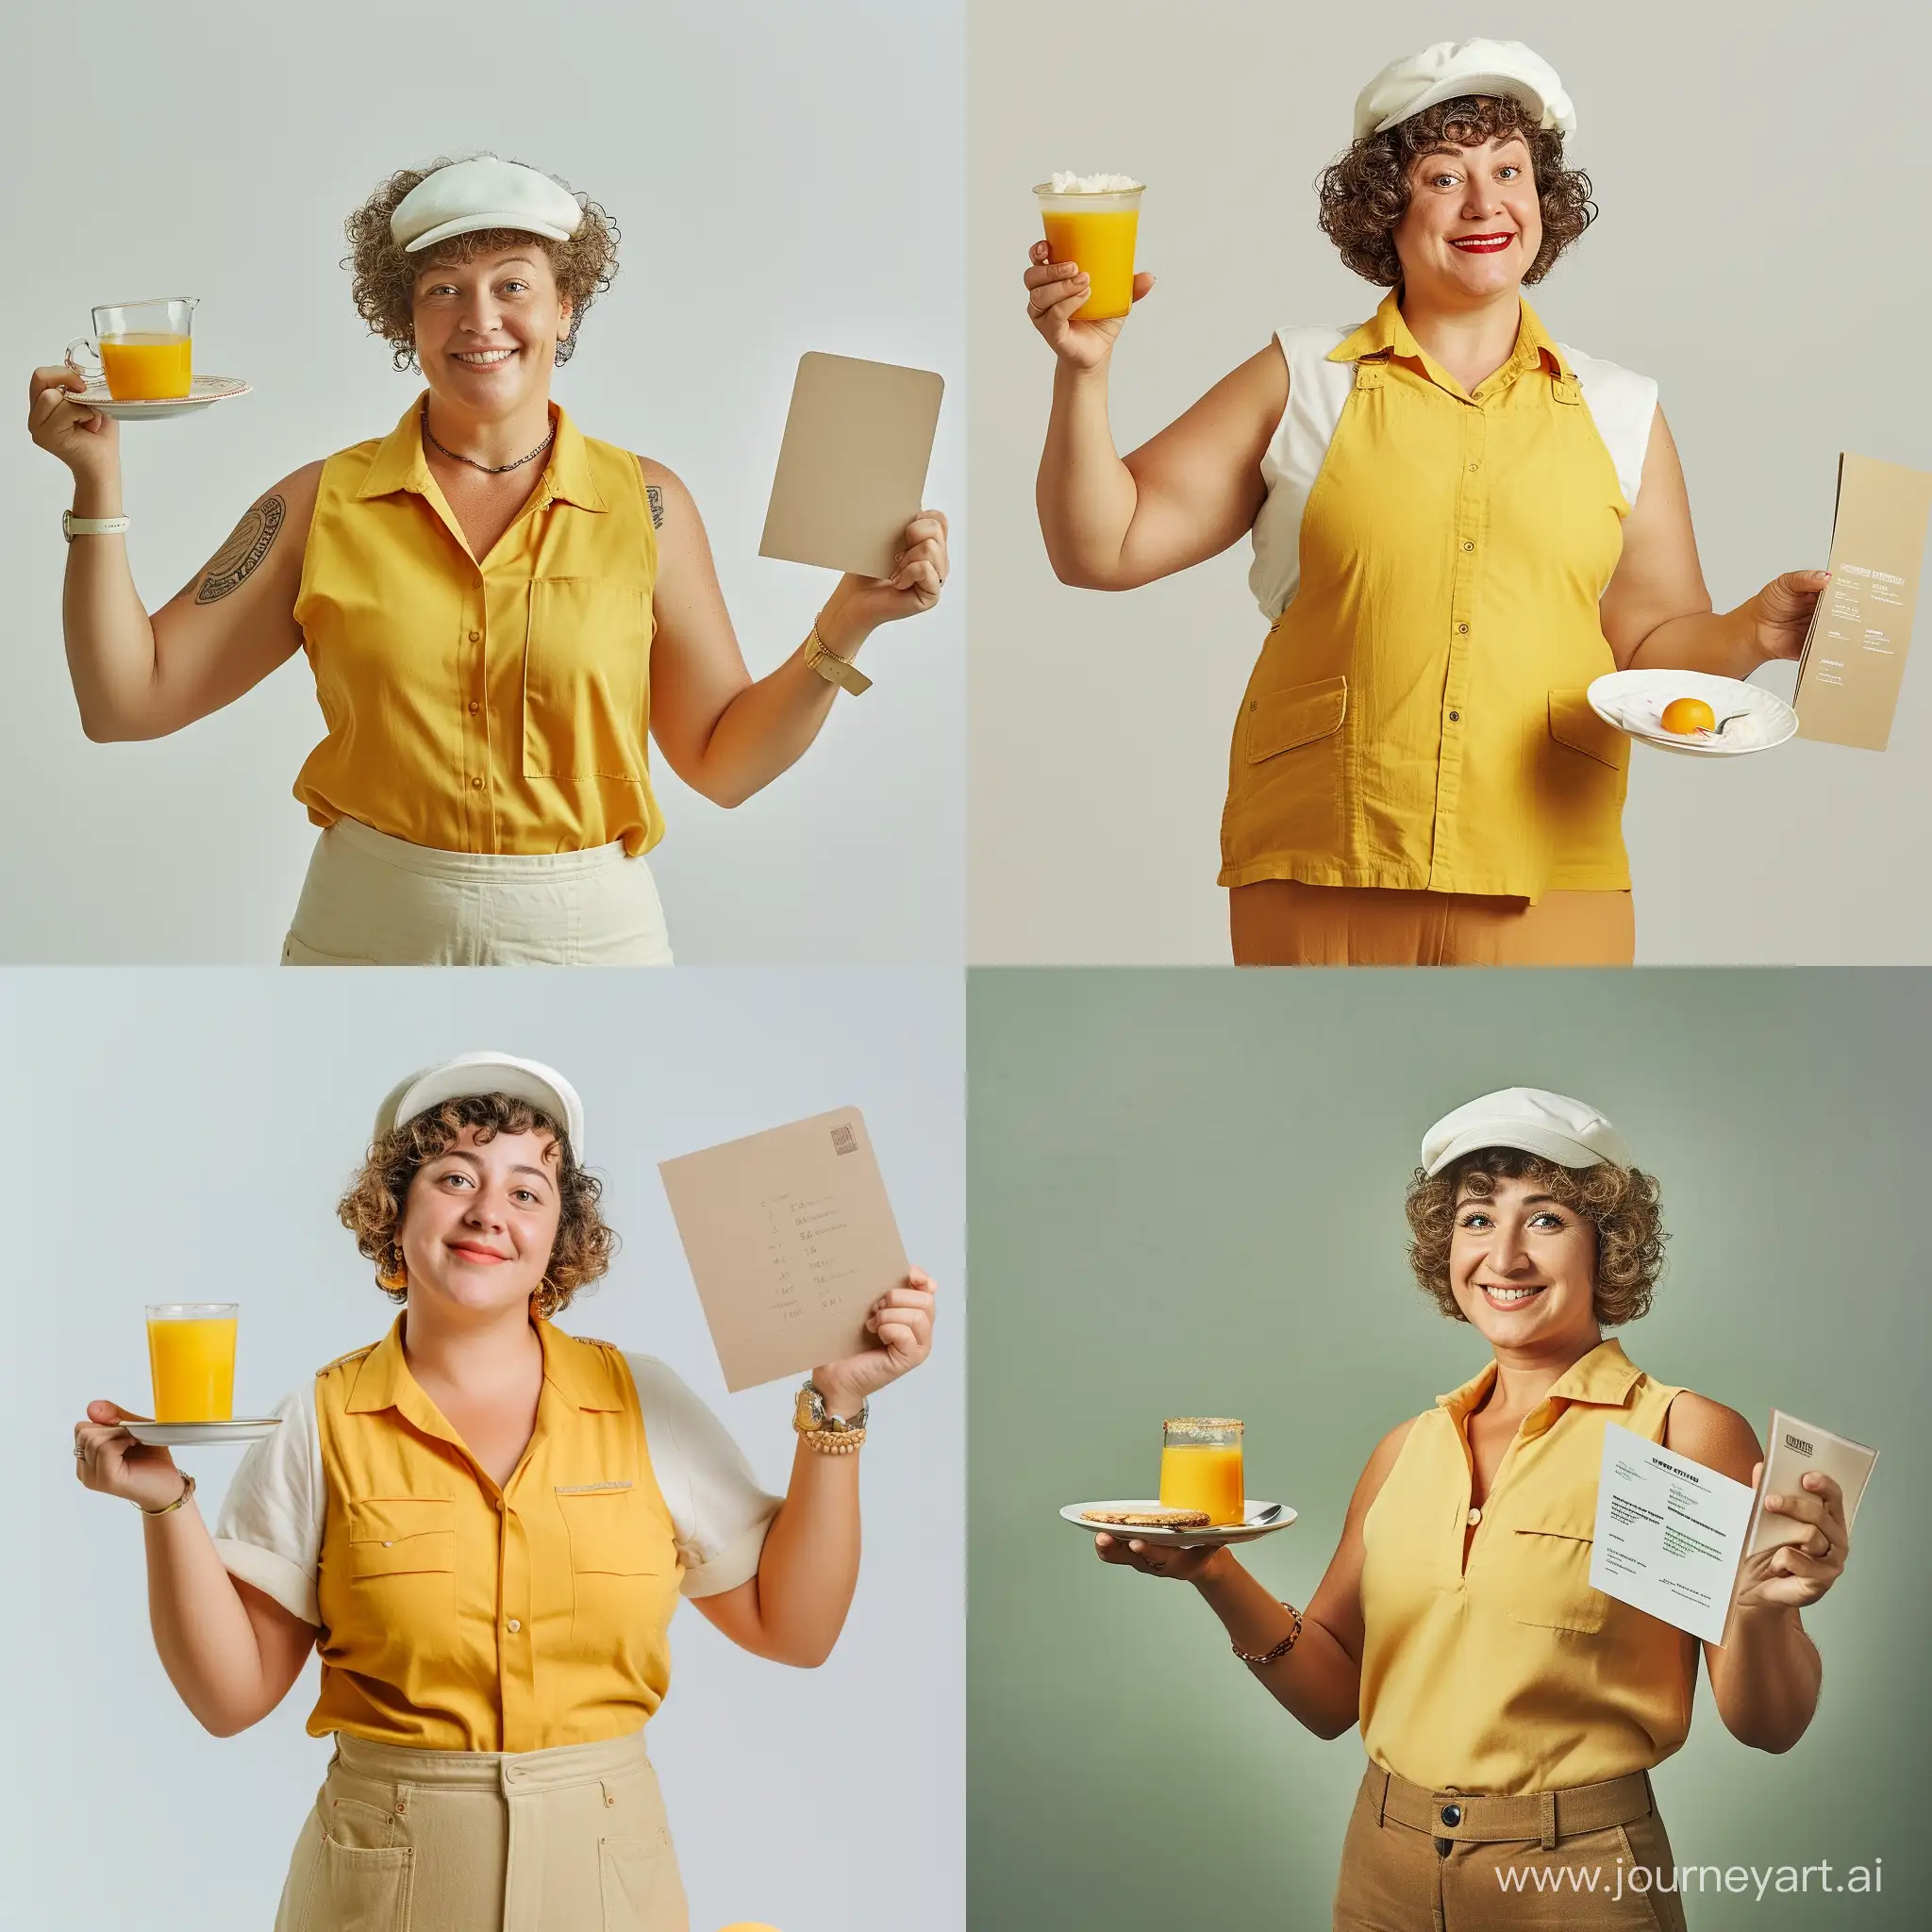 Una camarera de mediana edad gorda muy simpática y sonriente sostiene con un brazo en alto un plato pequeño con un vaso con zumo de naranja, en la otra mano sujeta una carta de cafetería, pelo corto rizado con cofia blanca, camisa sin mangas amarilla, vista de dron